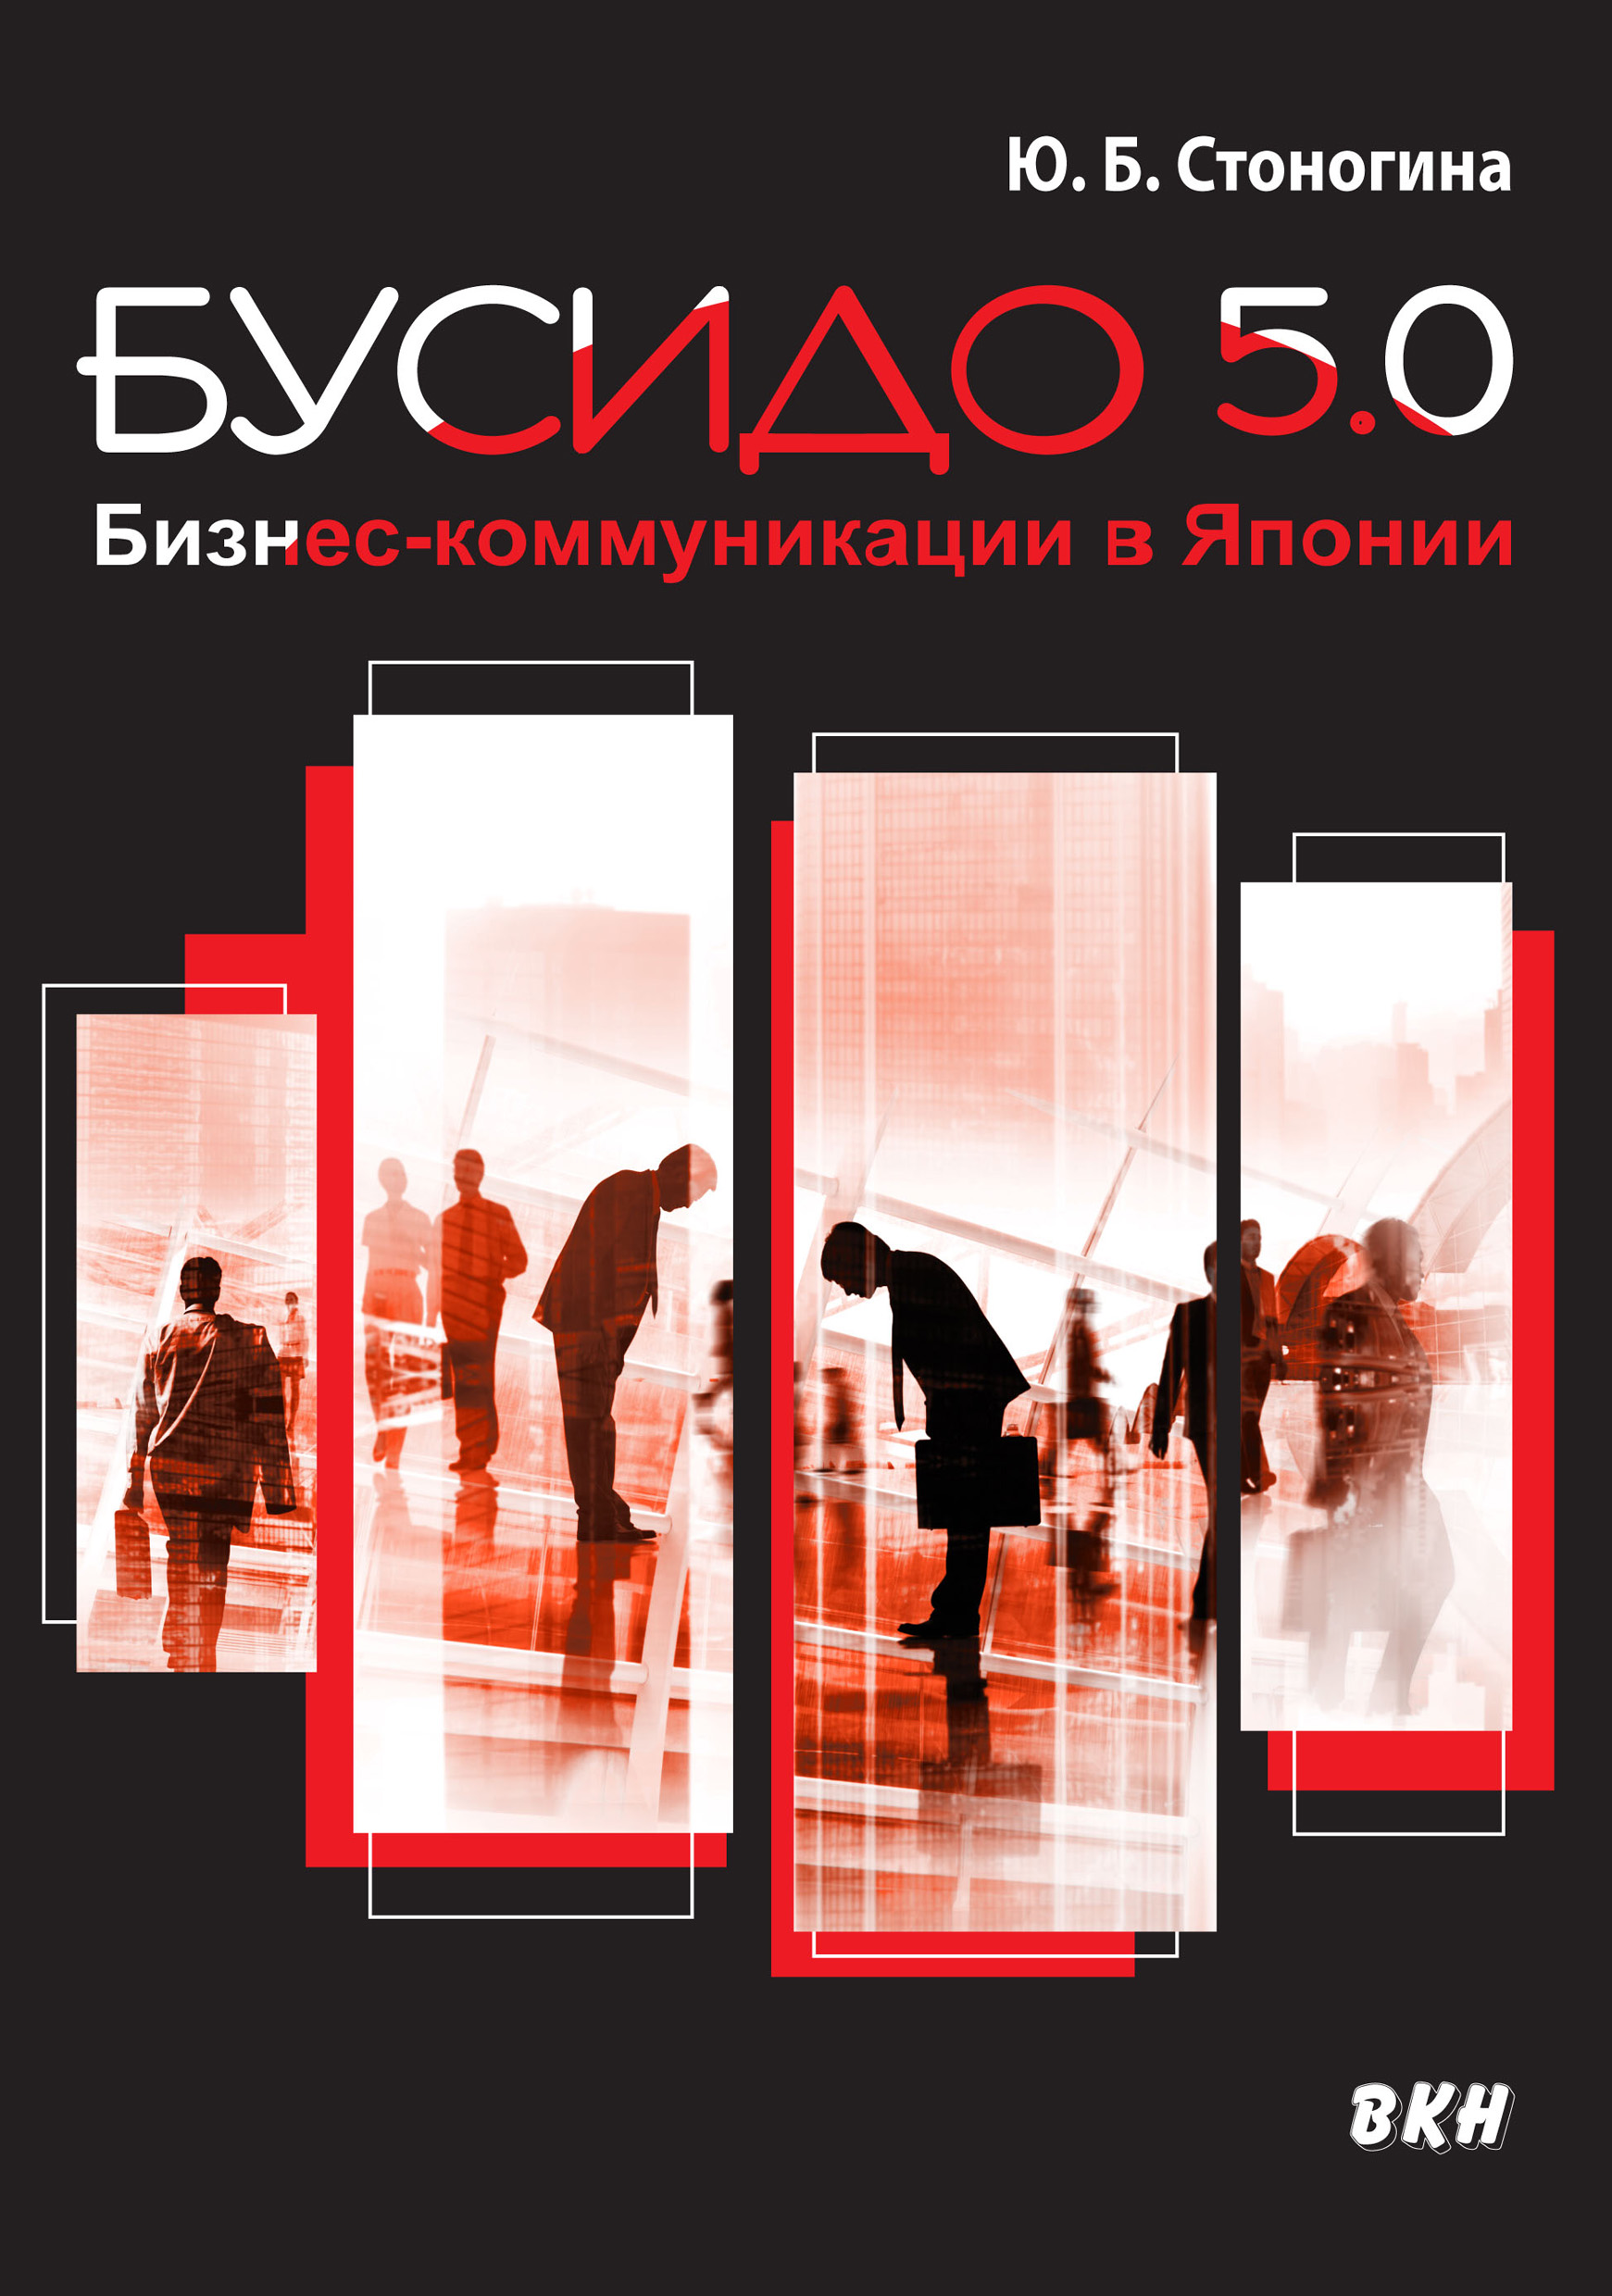 Книга Бусидо 5.0. Бизнес-коммуникации в Японии из серии , созданная Юлия Стоногина, может относится к жанру О бизнесе популярно, ВЭД, Управление, подбор персонала, О бизнесе популярно, О бизнесе популярно. Стоимость электронной книги Бусидо 5.0. Бизнес-коммуникации в Японии с идентификатором 43091575 составляет 299.00 руб.